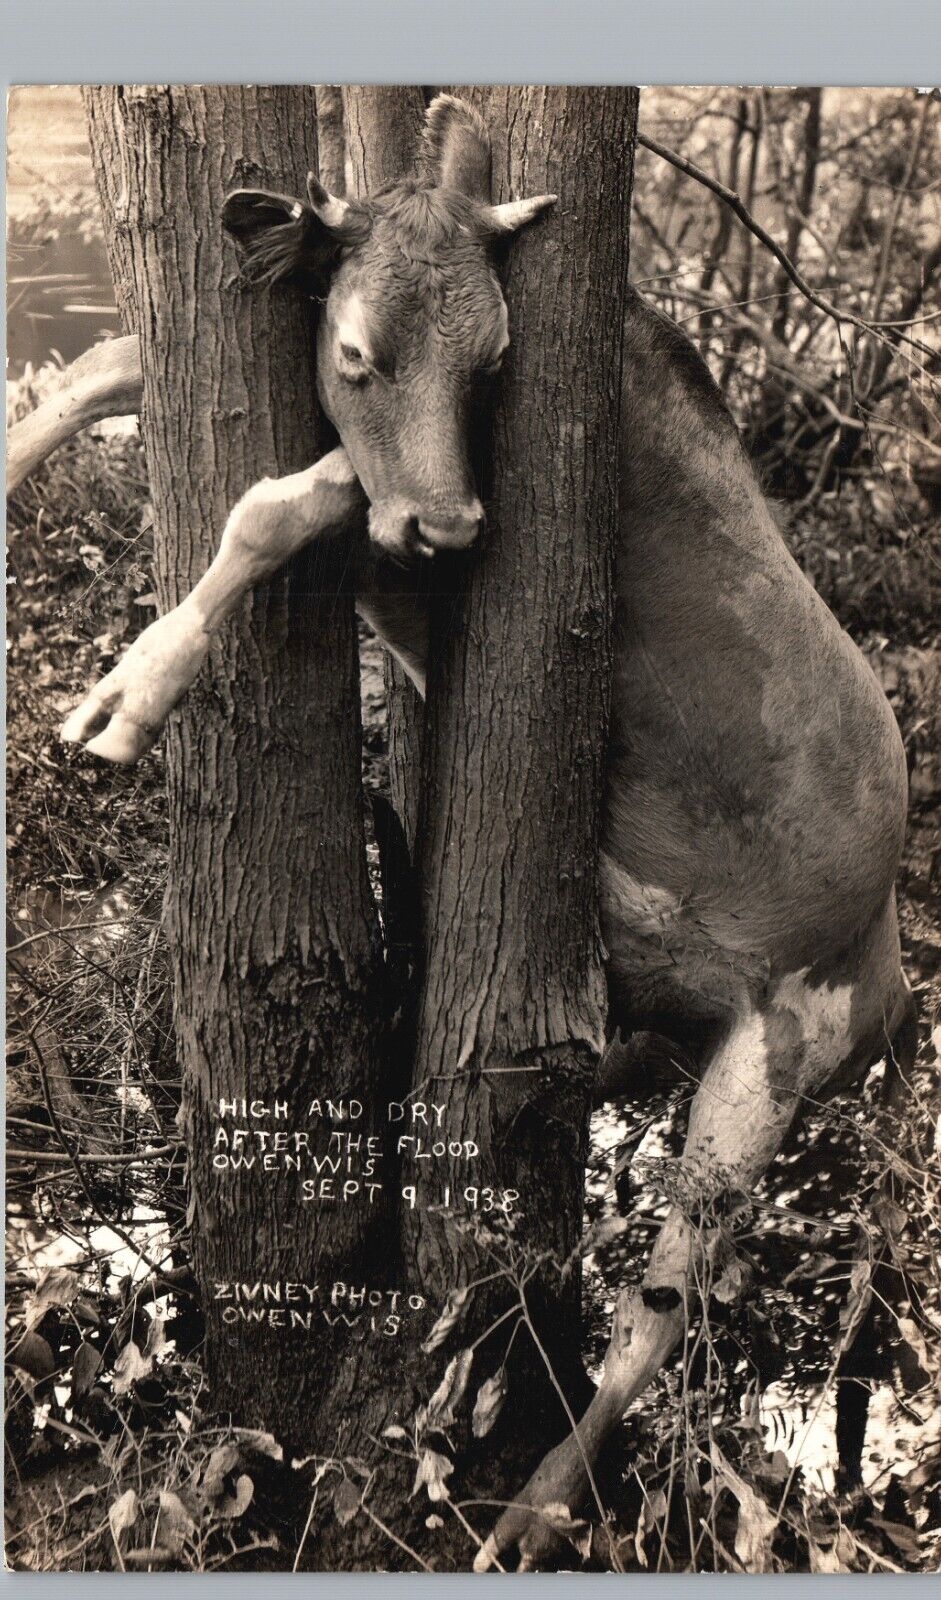 DEAD COW STUCK IN TREE owen wi real photo postcard rppc flood wreck freak scene